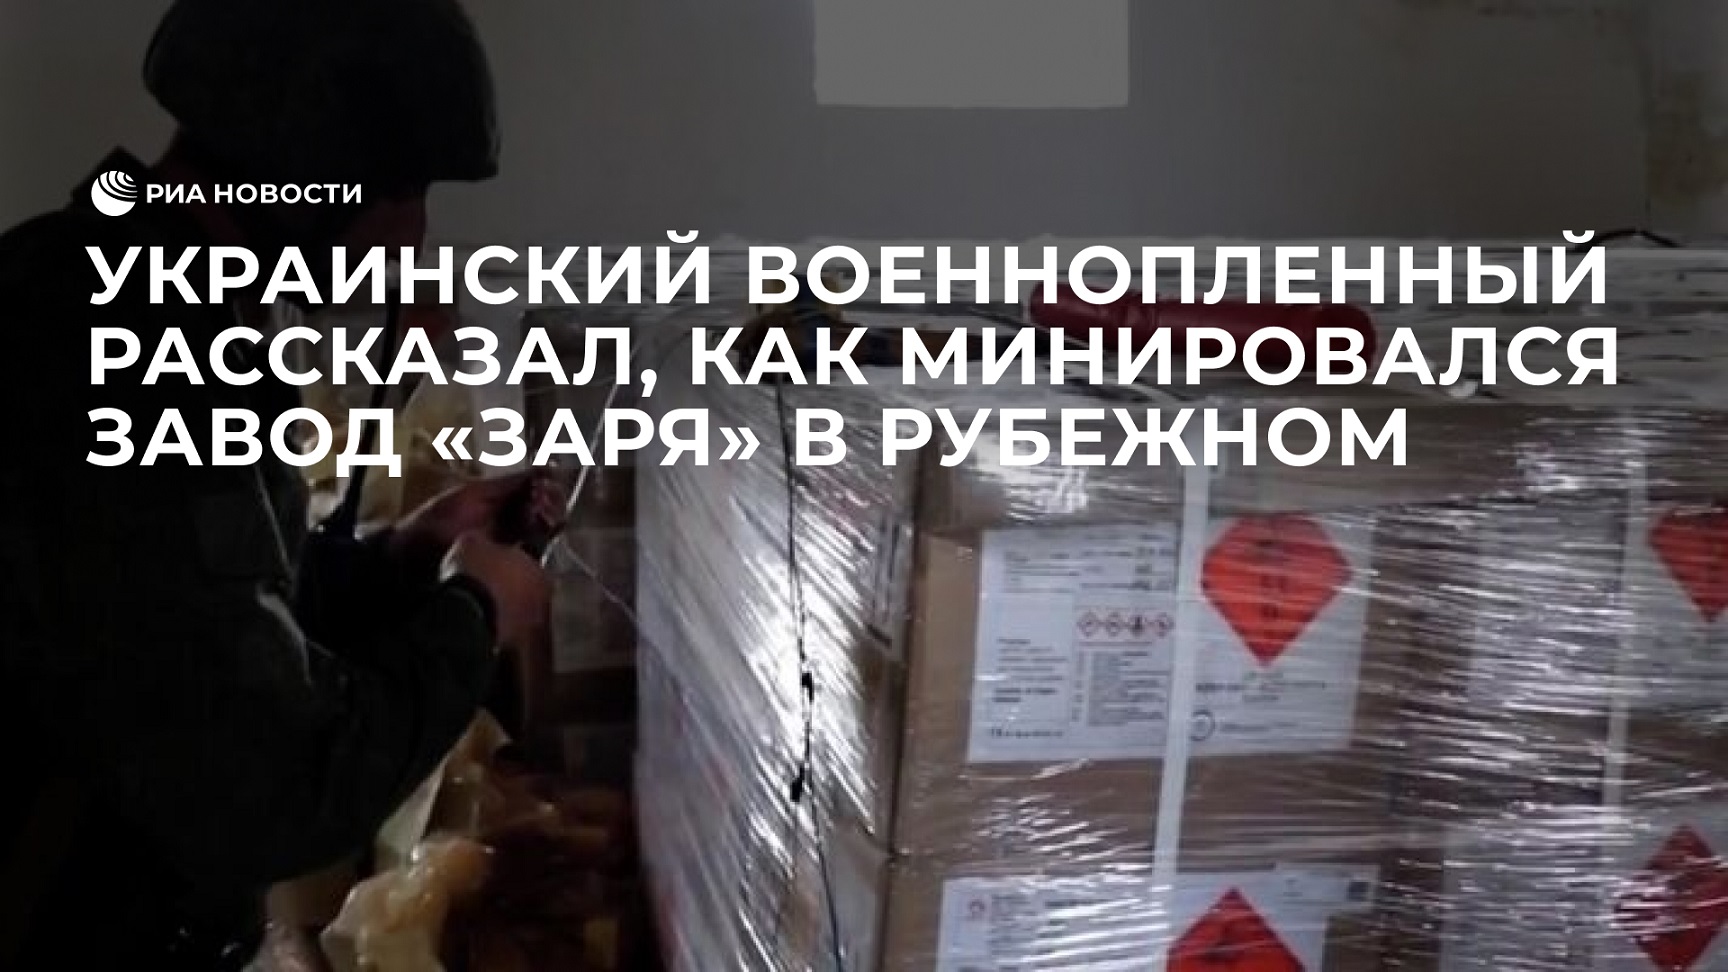 Украинский военнопленный рассказал, как минировался завод "Заря" в Рубежном